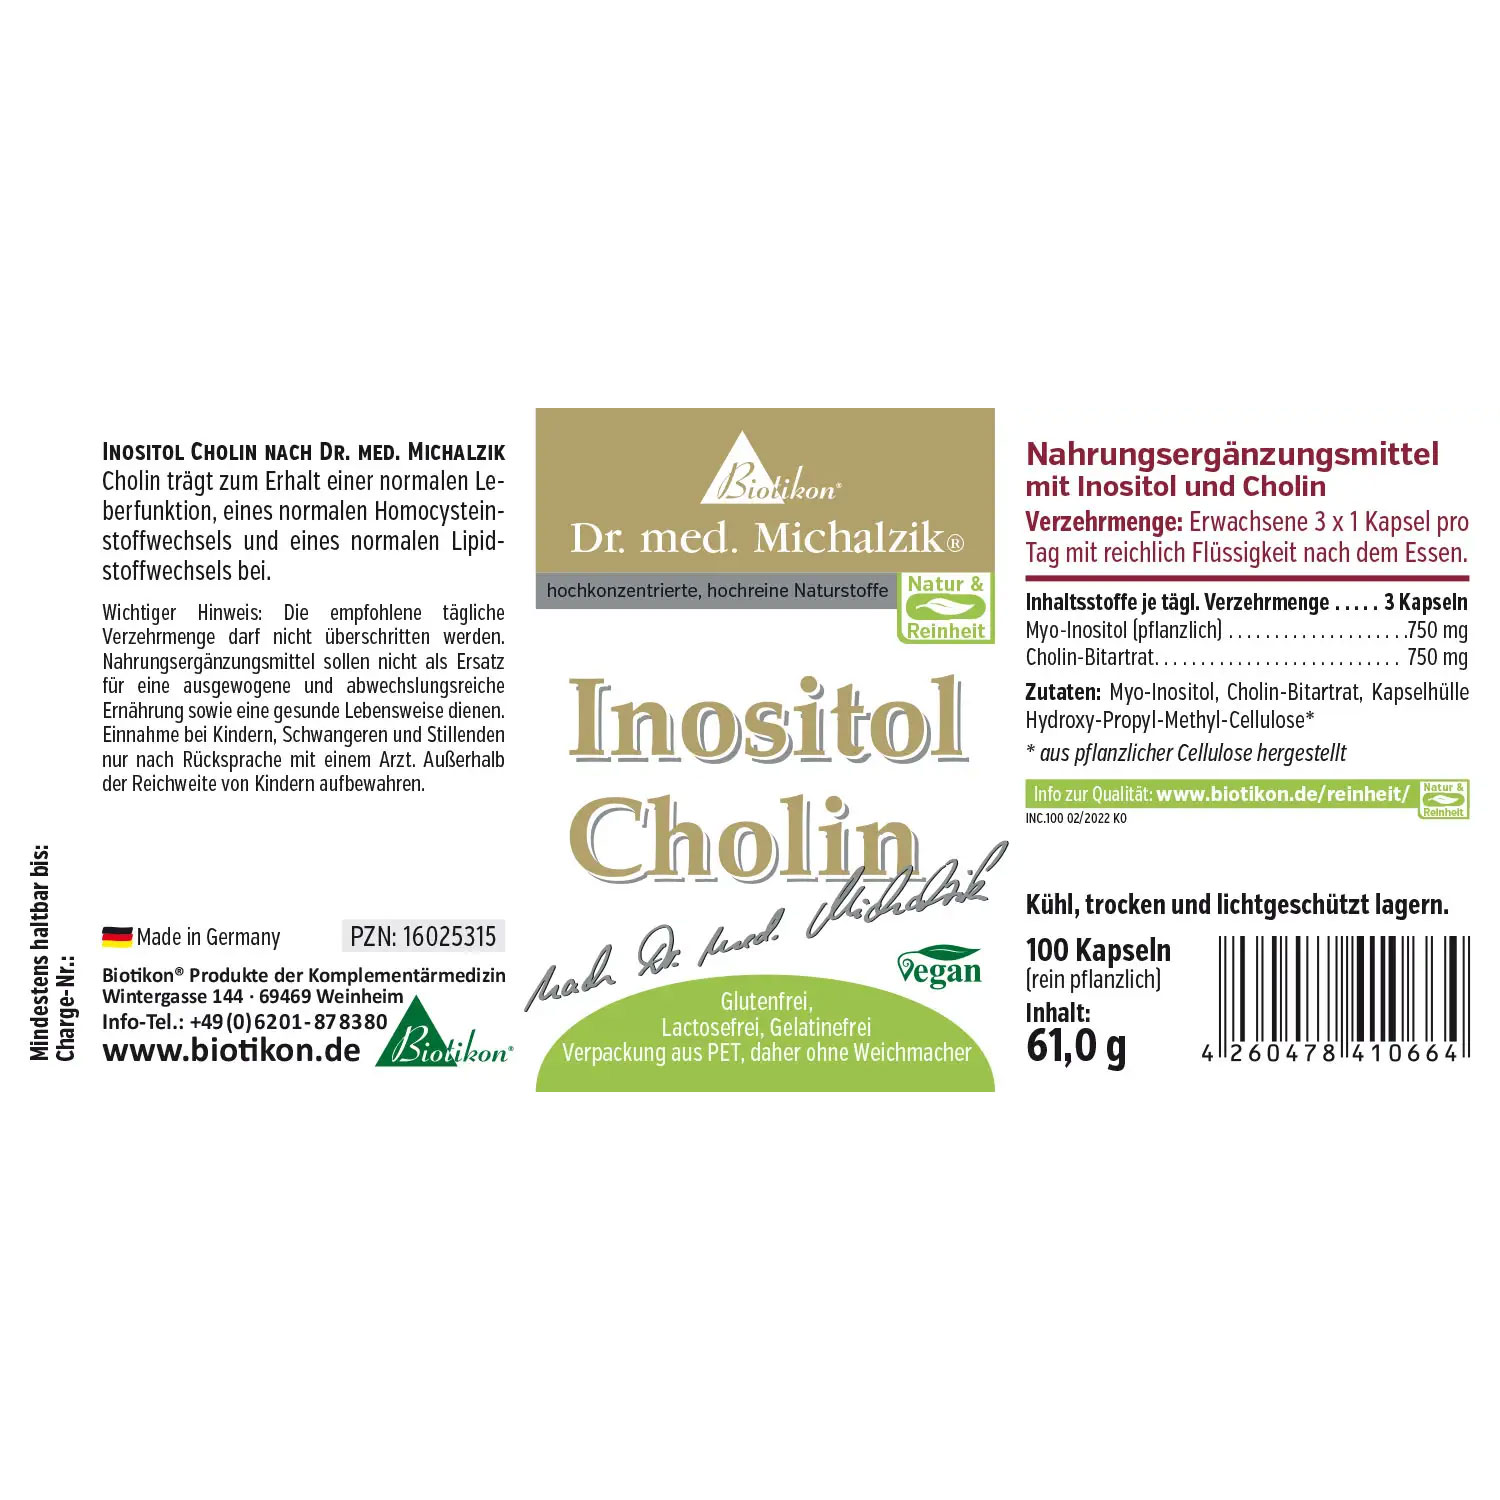 Inositol Cholin von Biotikon - Etikett